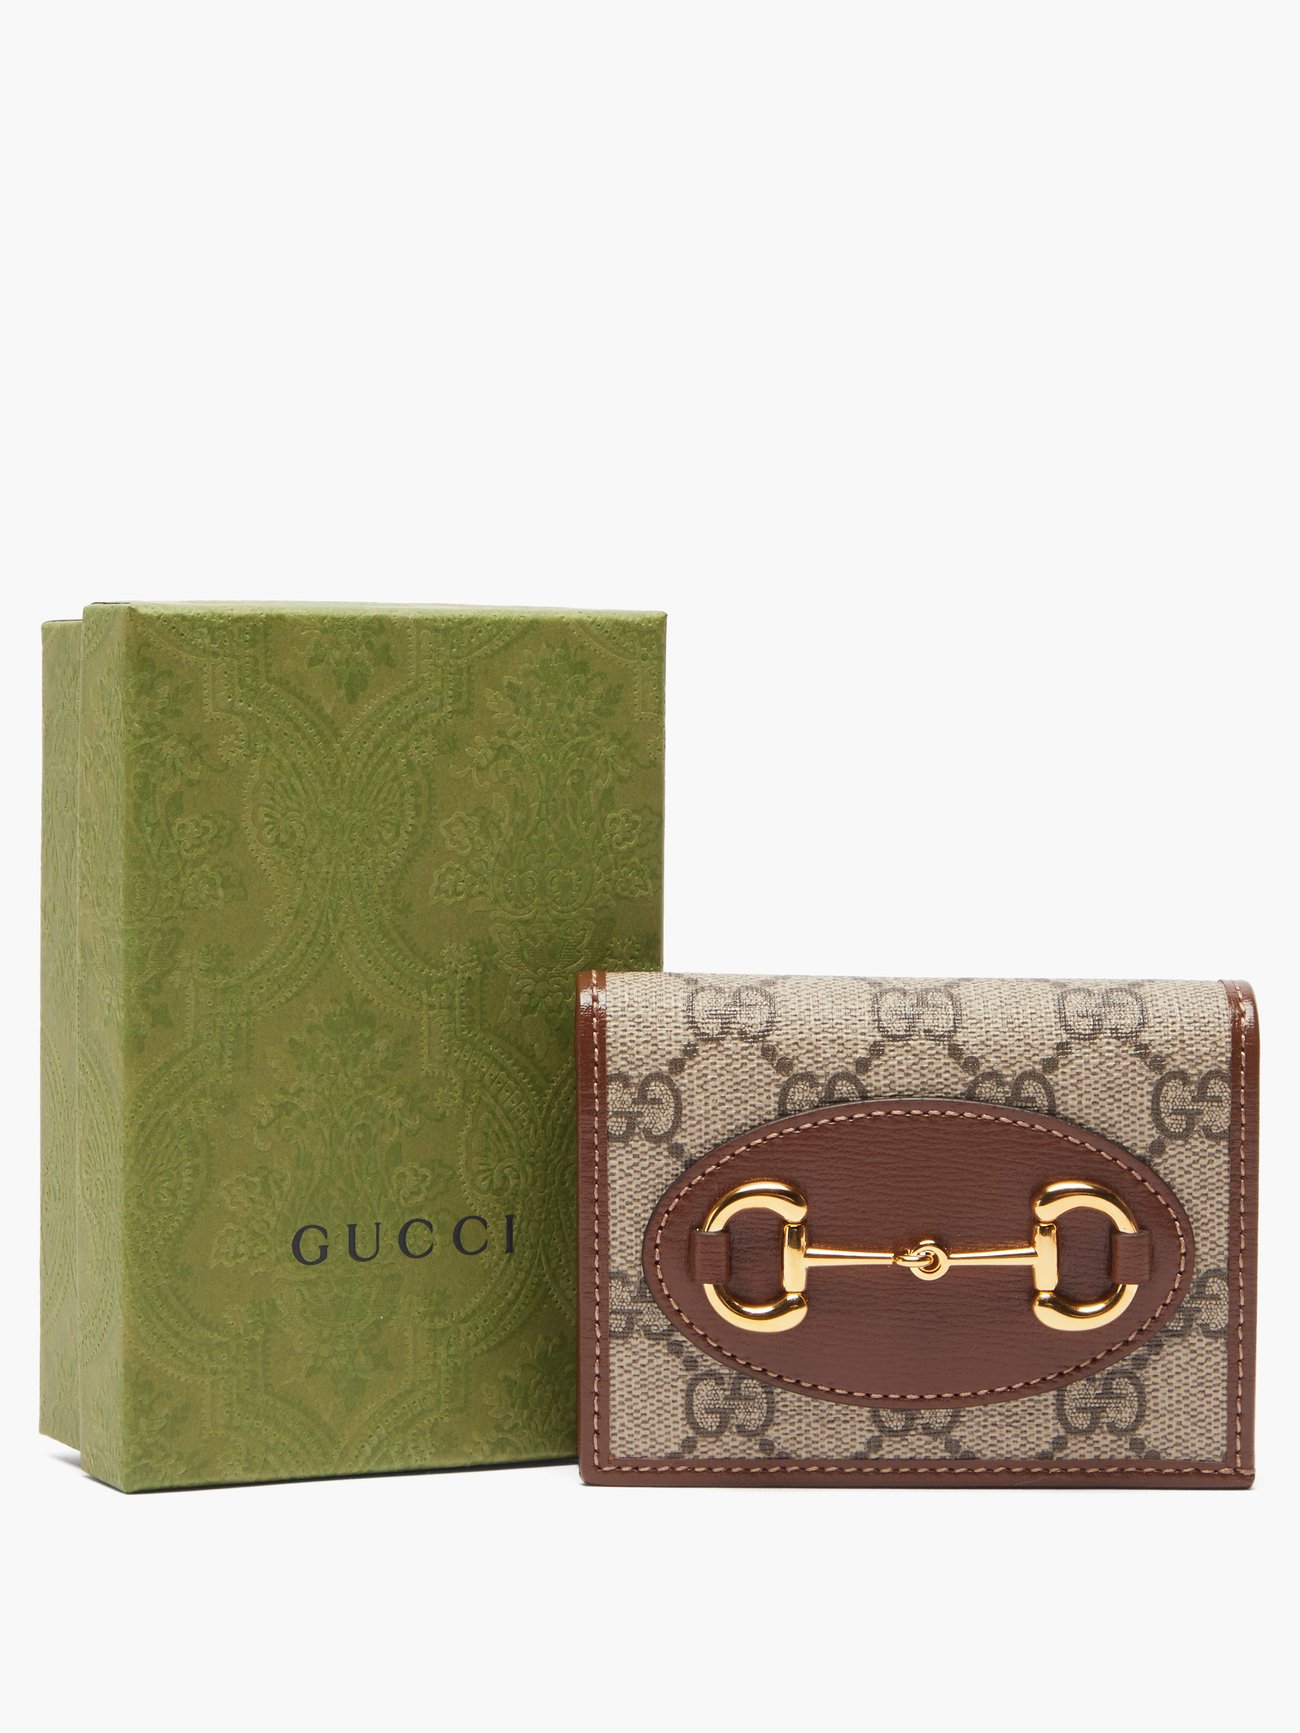 Gucci Horsebit 1955 card case wallet